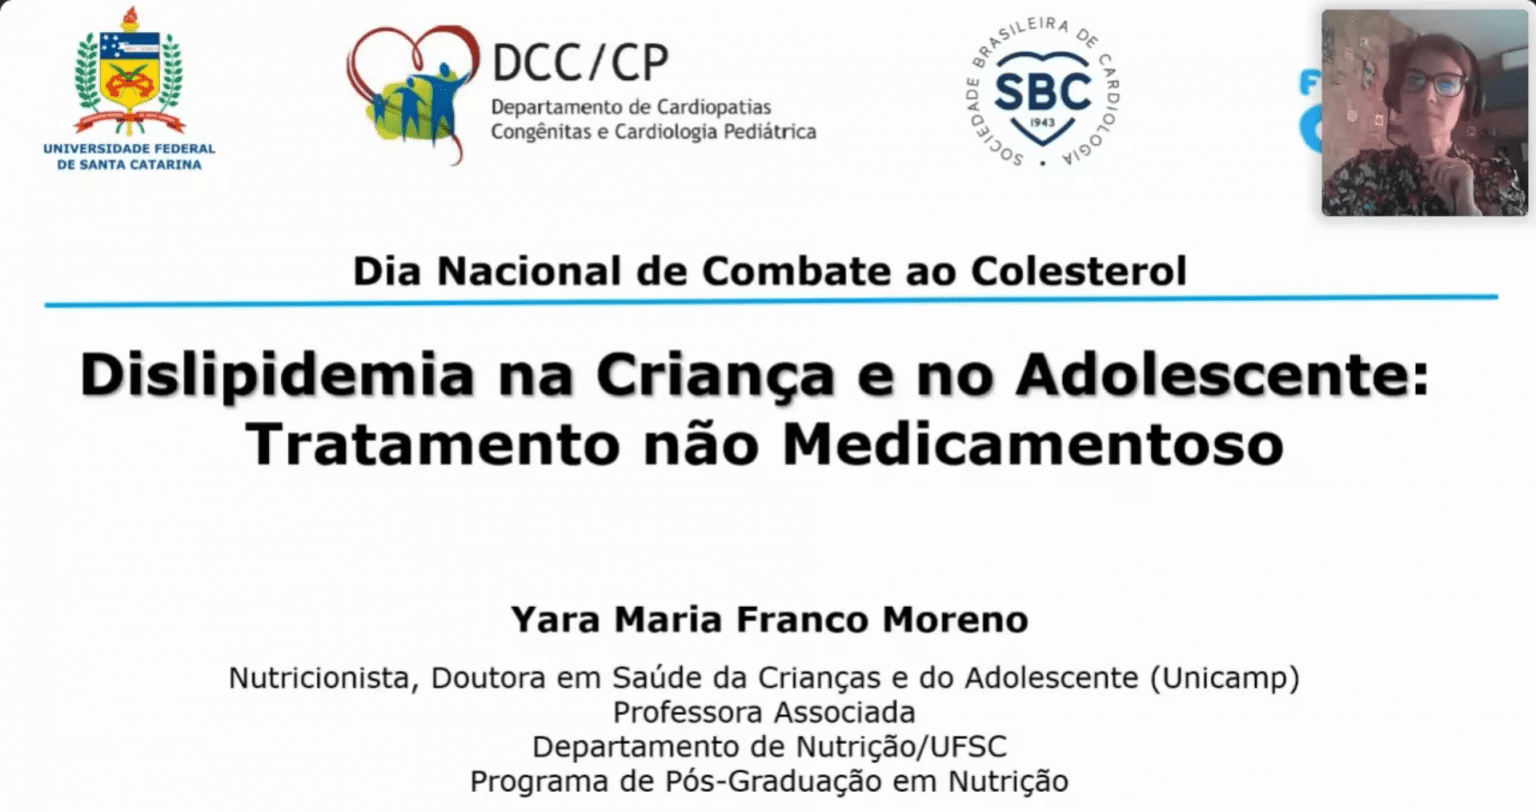 [Dcc Cp] Corte Dislipidemia Na Criança E No Adolescente: Tratamento Não Medicamentoso08_08_2020 (720P)-1(4)